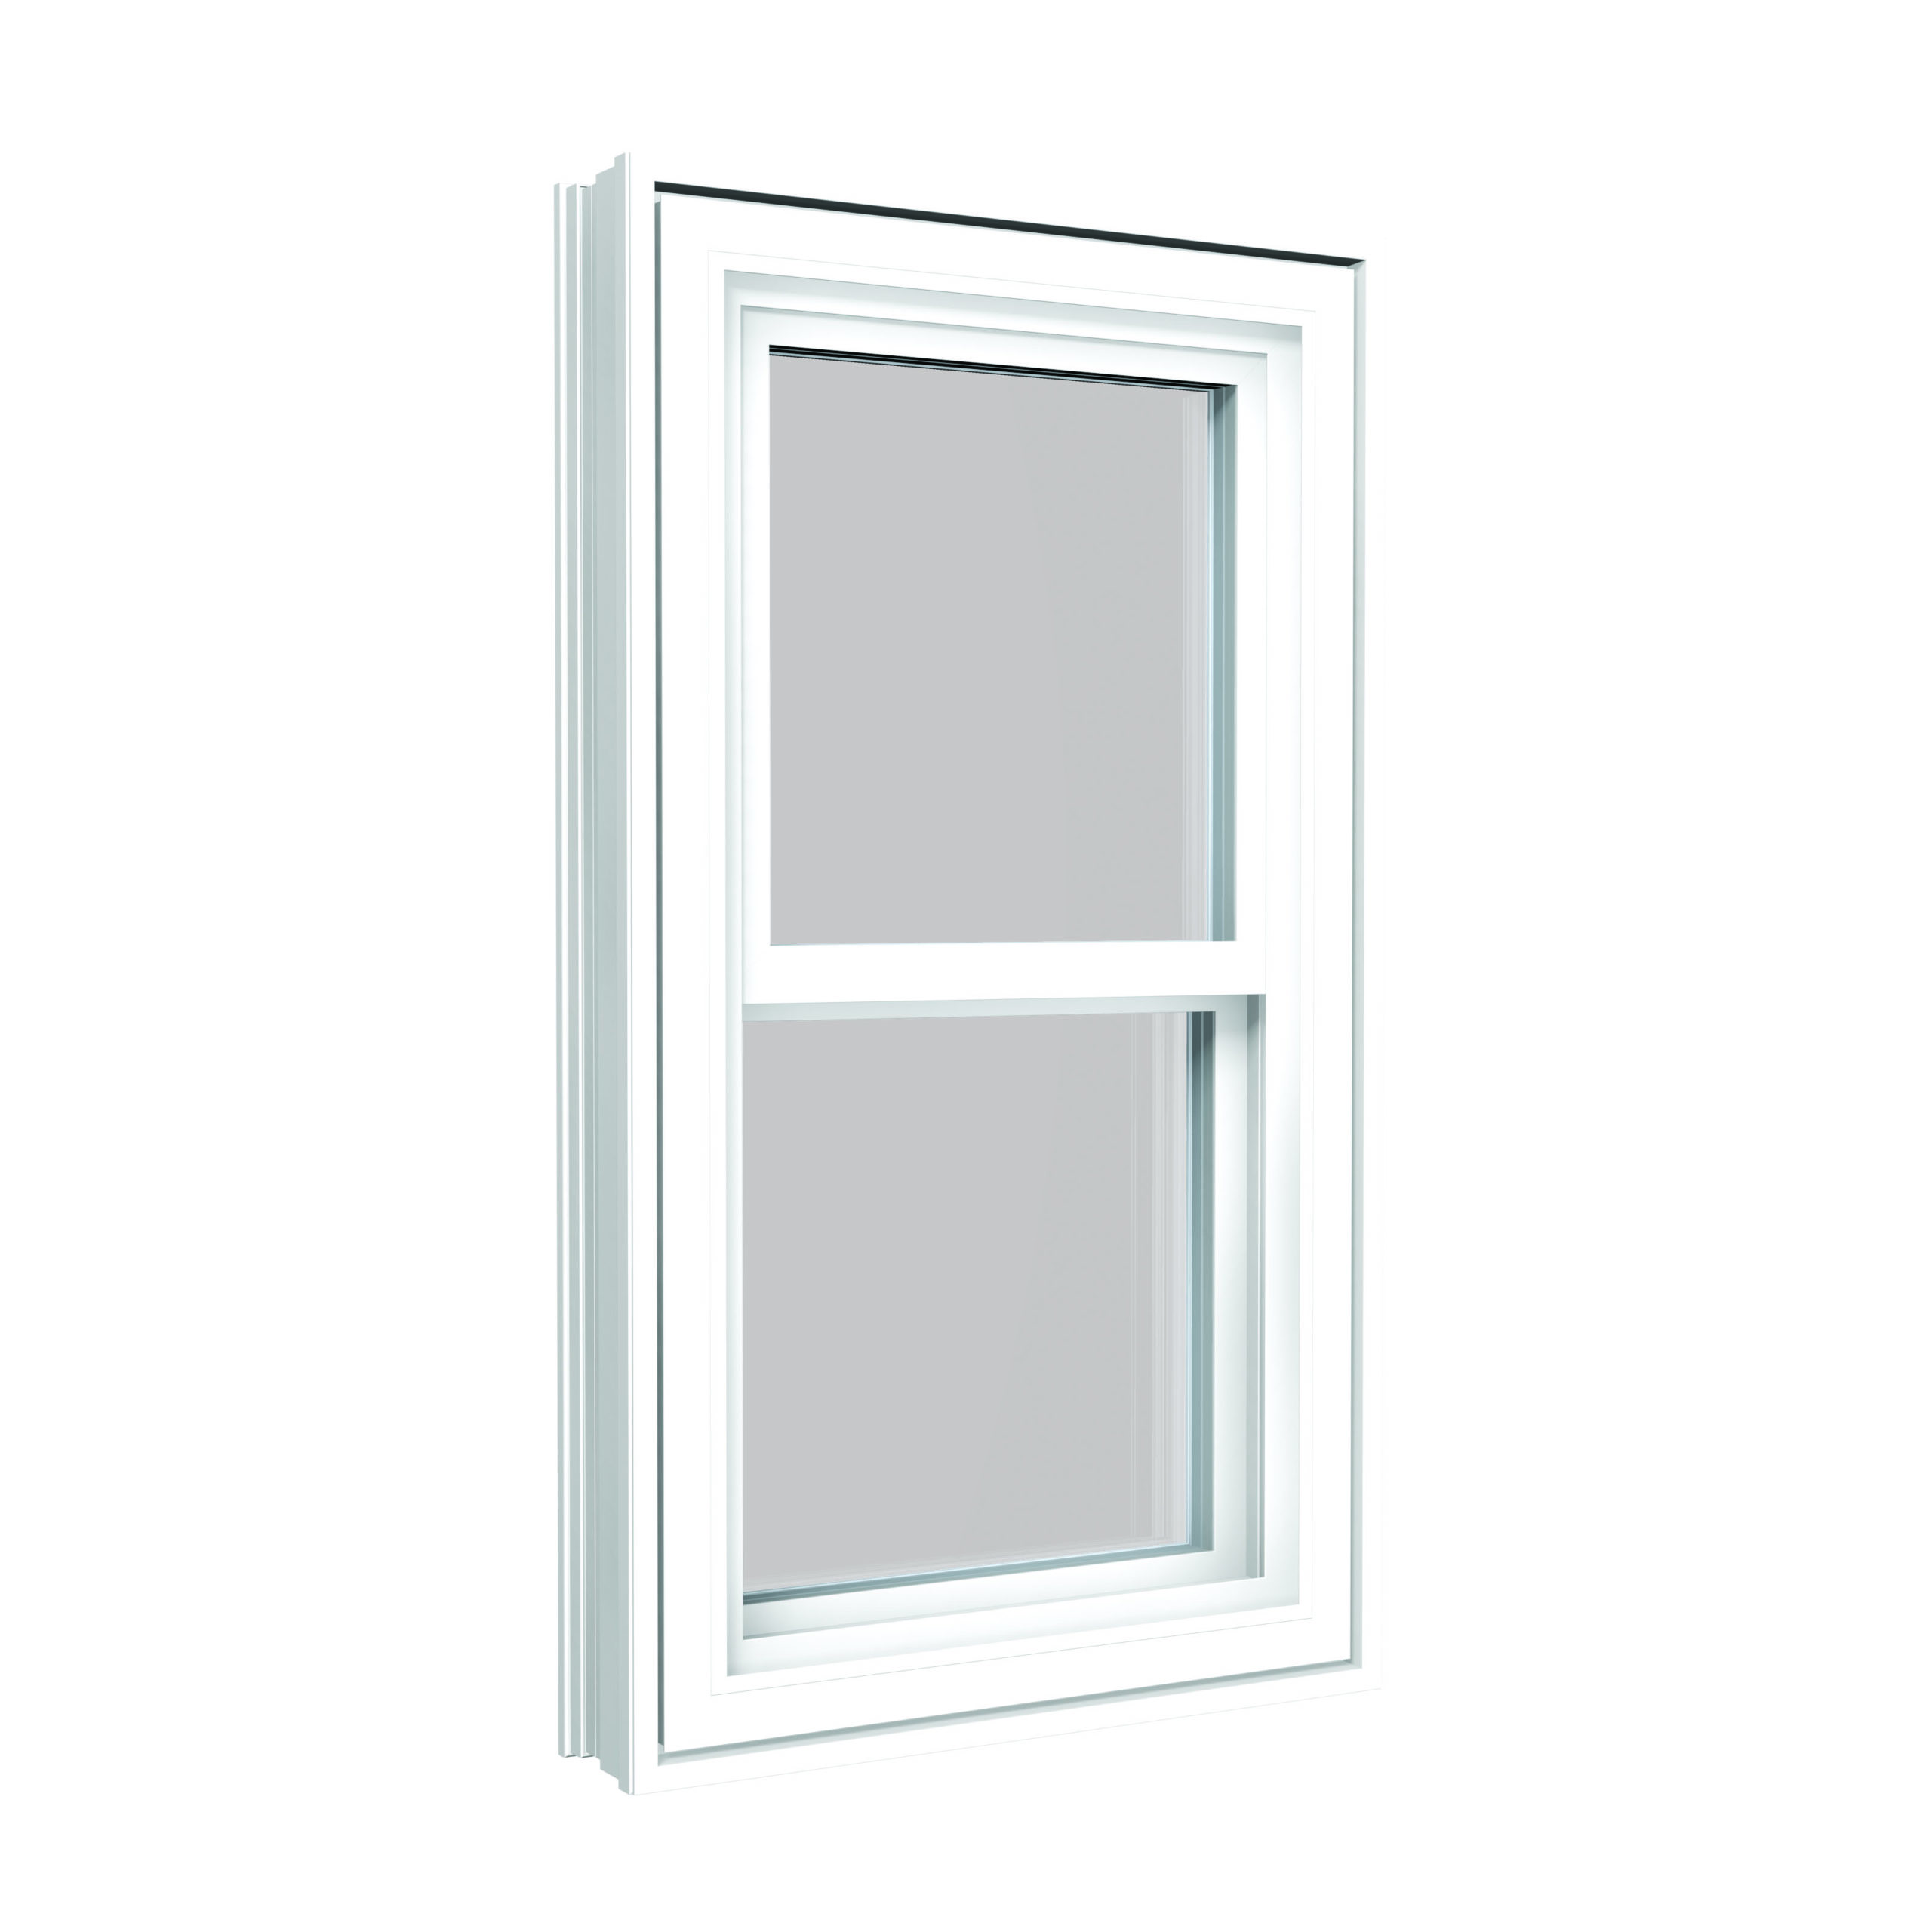 Gentek Double Hung Window in White